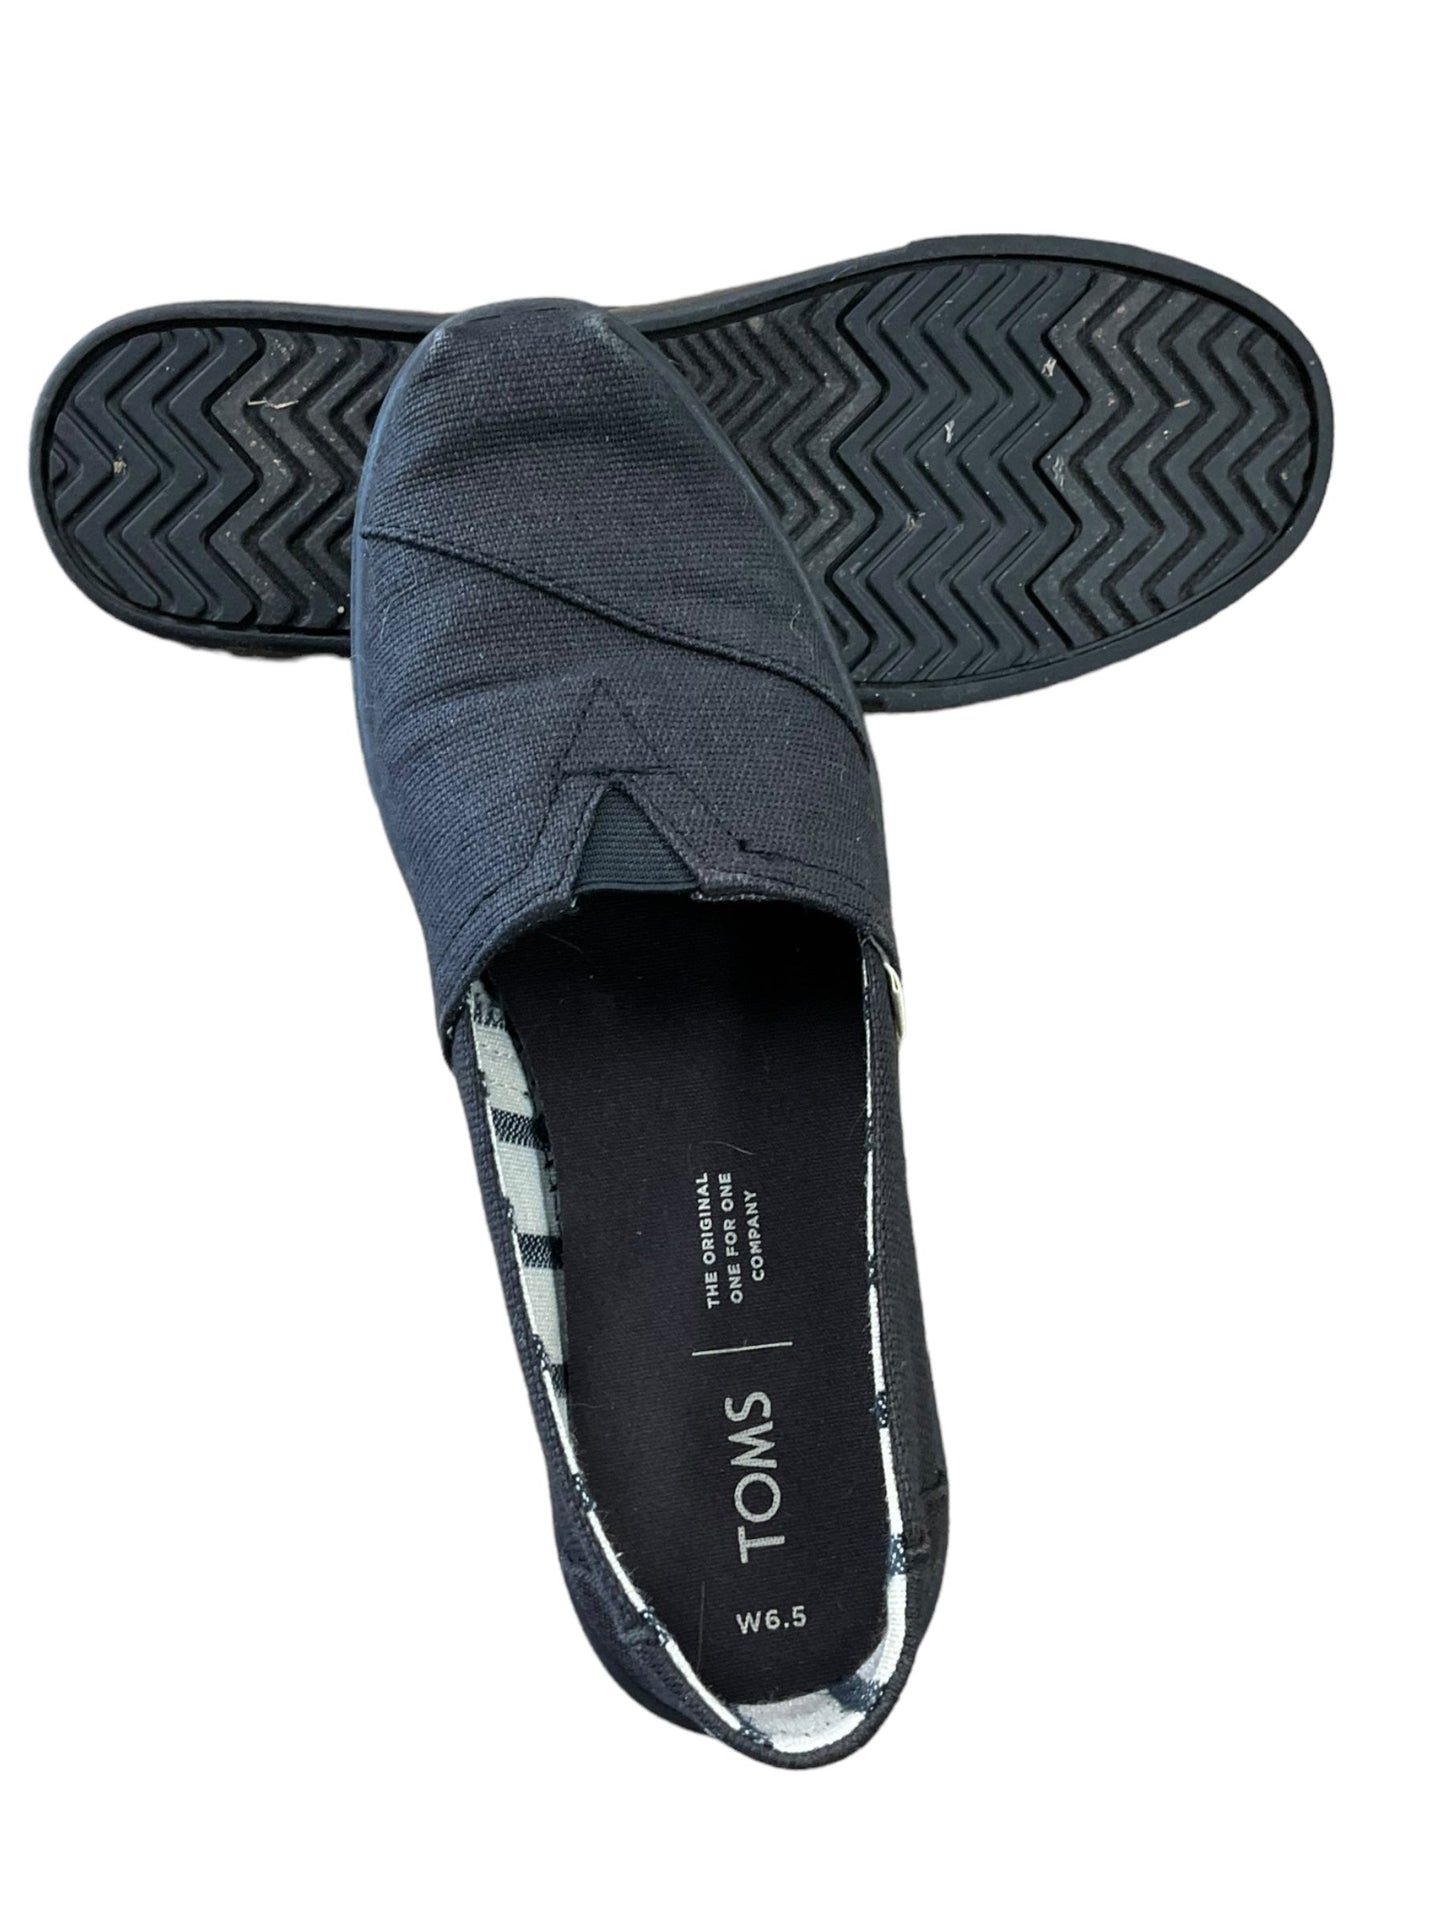 Black Shoes Flats Toms, Size 6.5